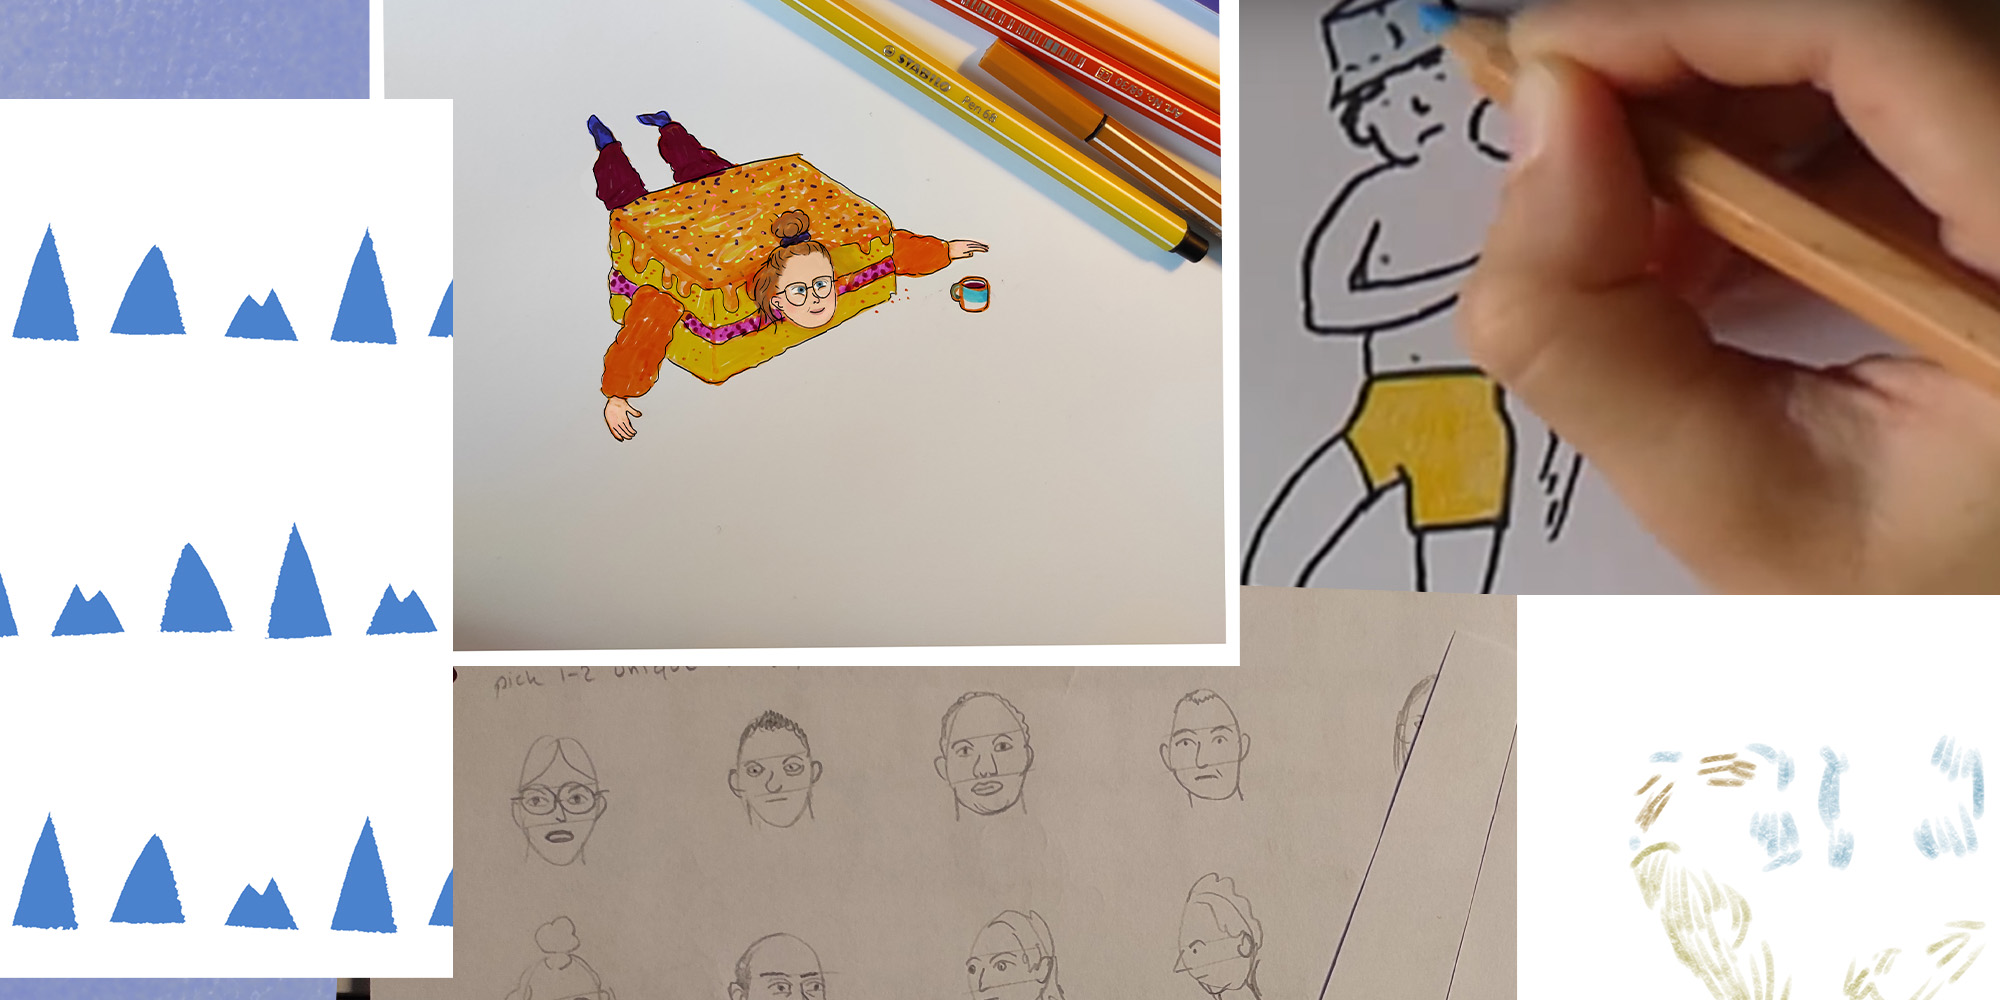 tegneøvelser kursus flere tegninger blyanter og farve - johanne vejrup nielsen